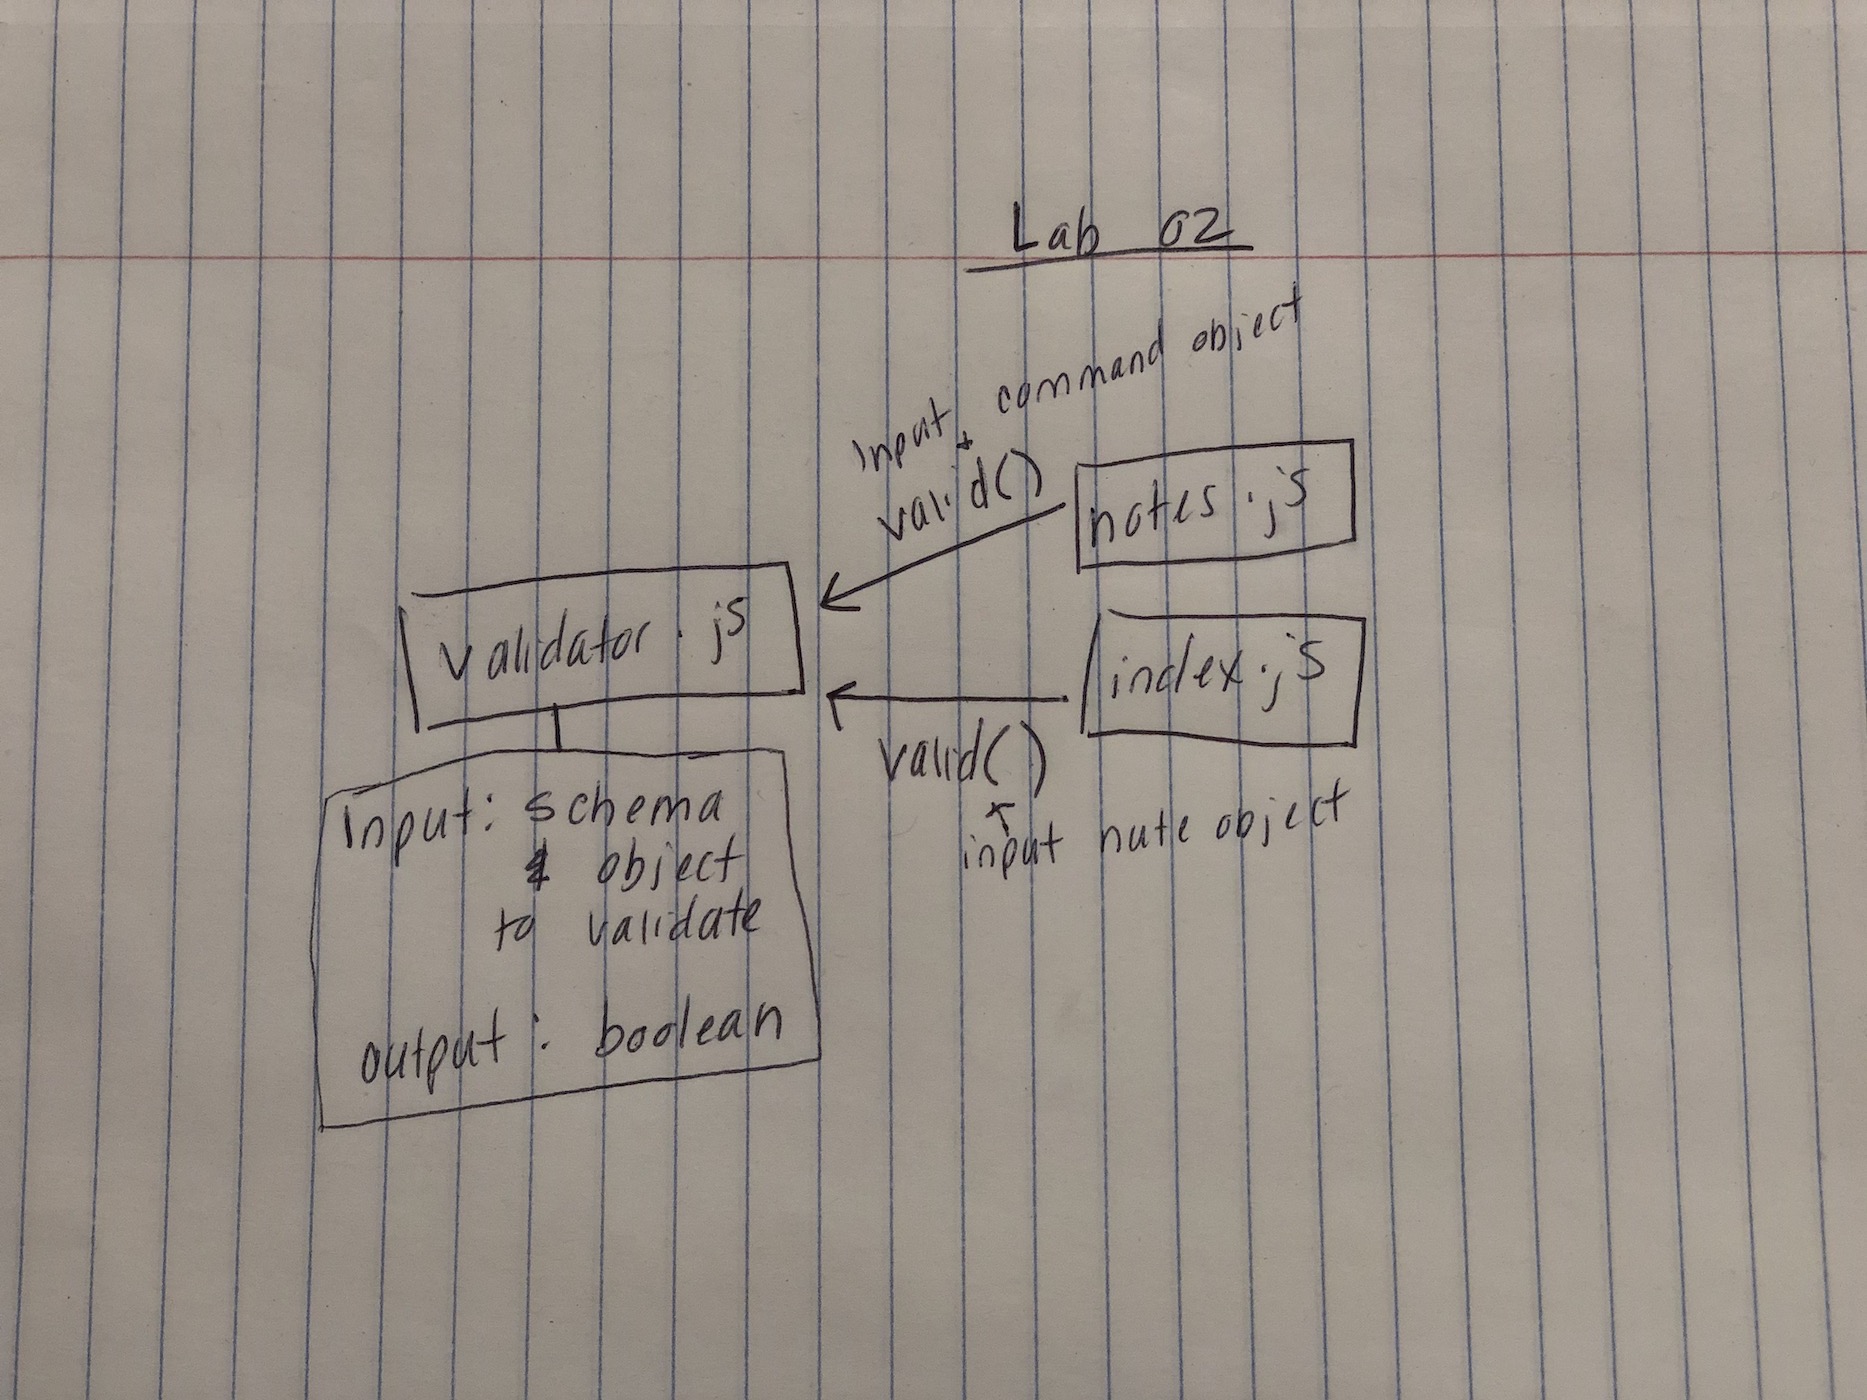 Lab 02 UML Diagram